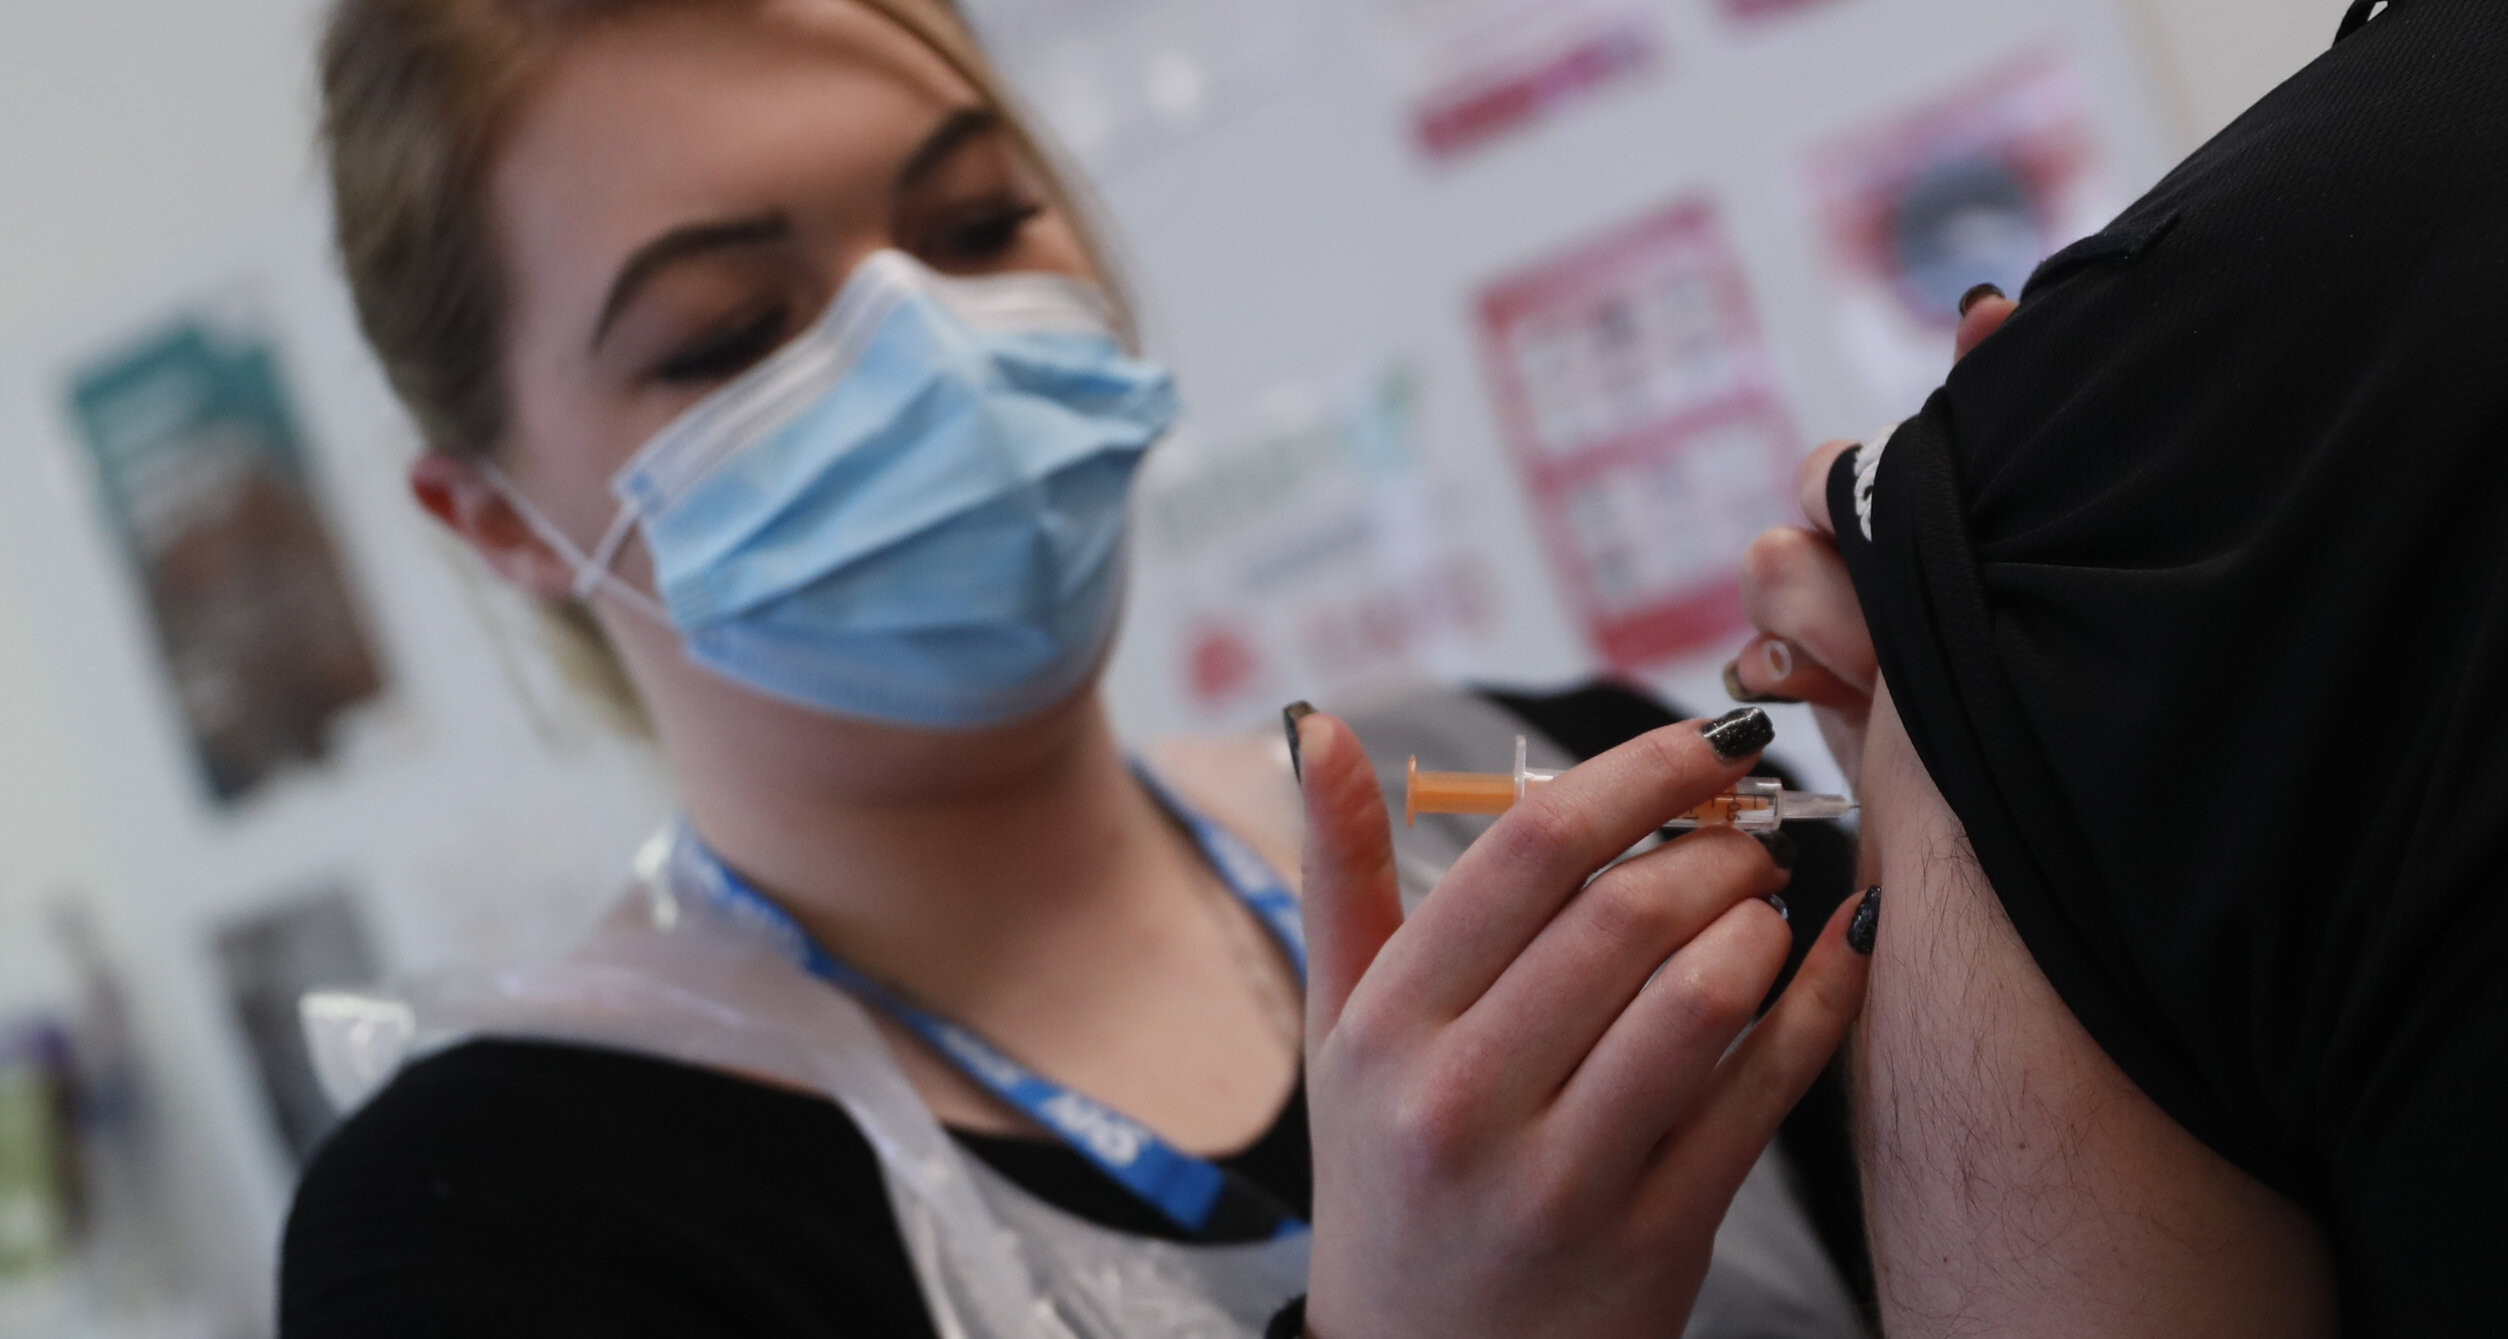 UK| Cinci persoane au dezvoltat cheaguri de sânge în urma vaccinării cu AstraZeneca, dar britanicii continuă să utilizeze serul